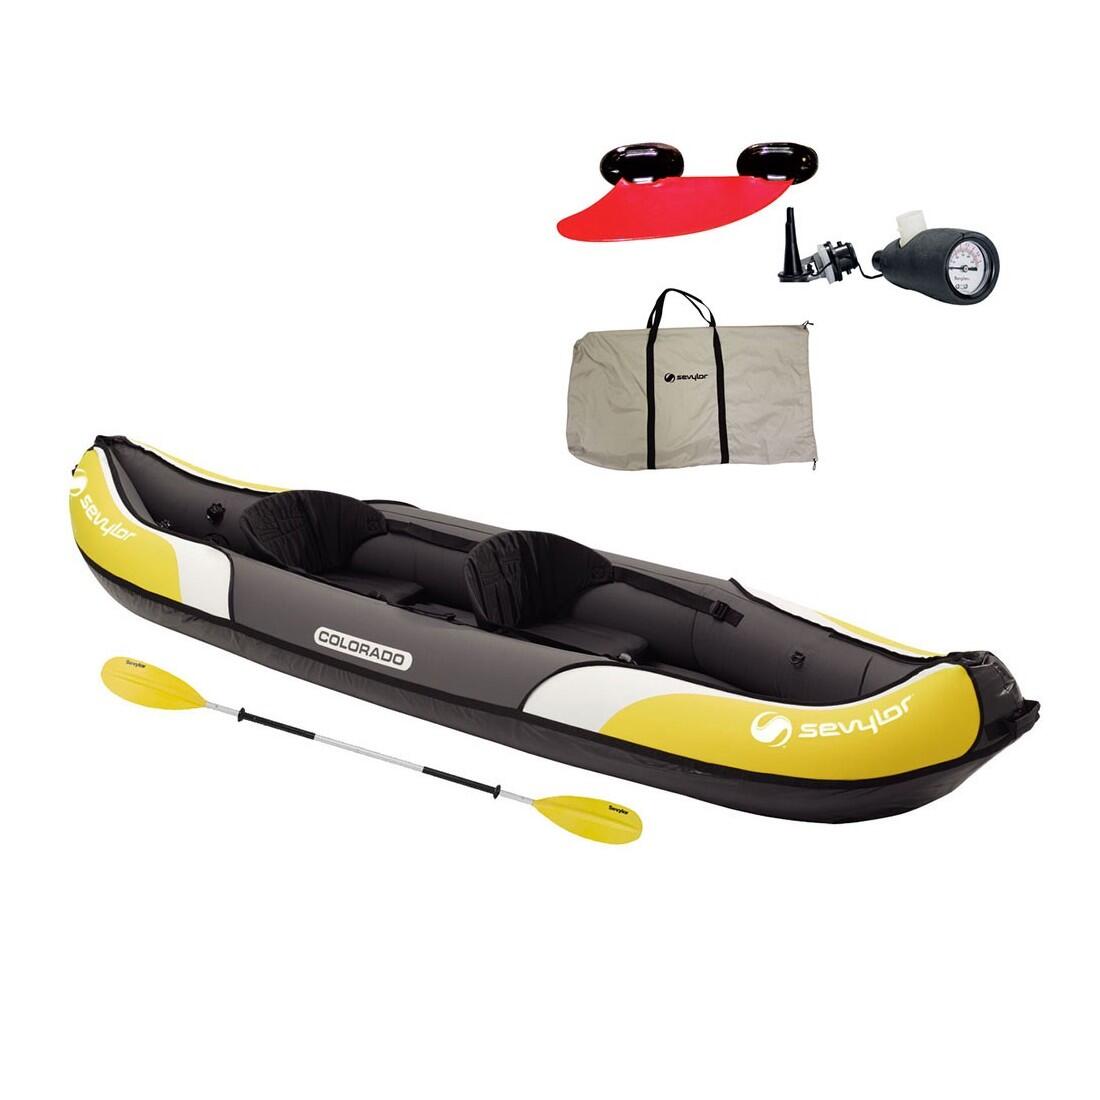 Sevylor Colorado Kit Inflatable Kayak 1/7